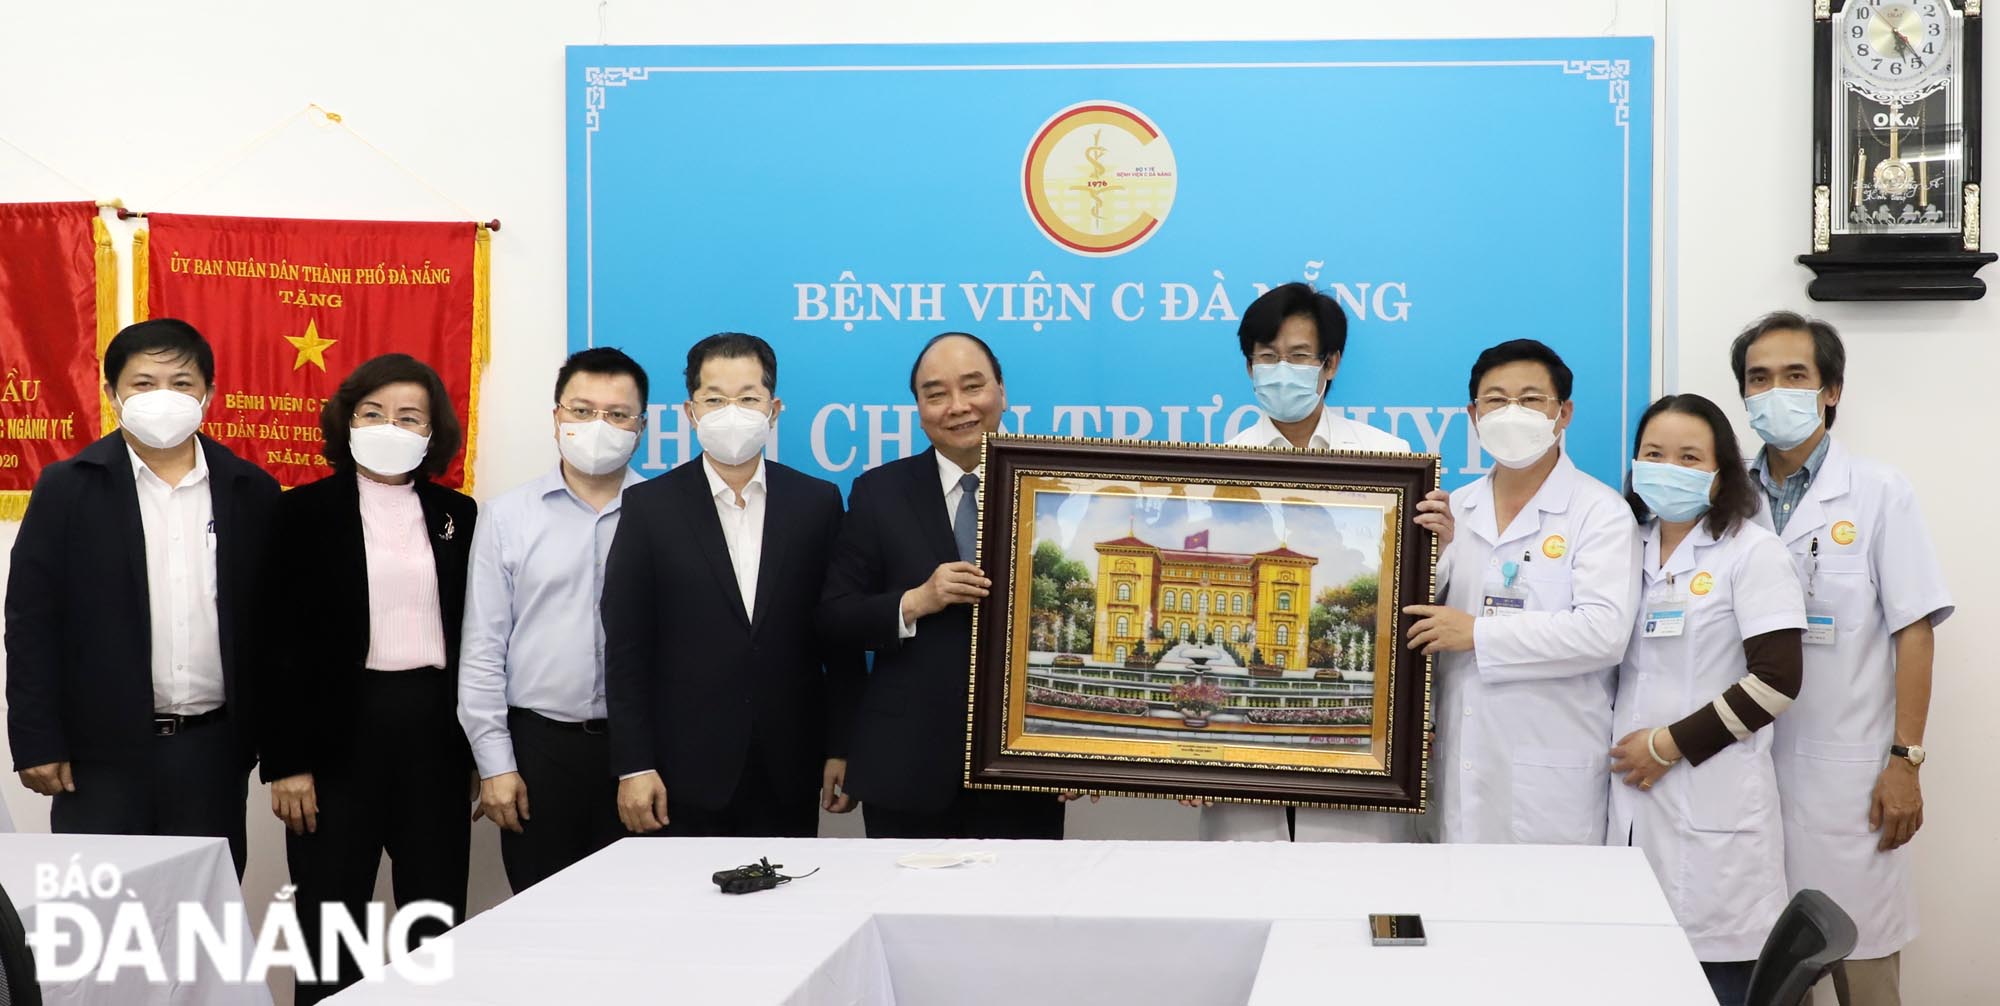 Chủ tịch nước Nguyễn Xuân Phúc tặng quà lưu niệm cho Bệnh viện Đà Nẵng. Ảnh: NGỌC PHÚ